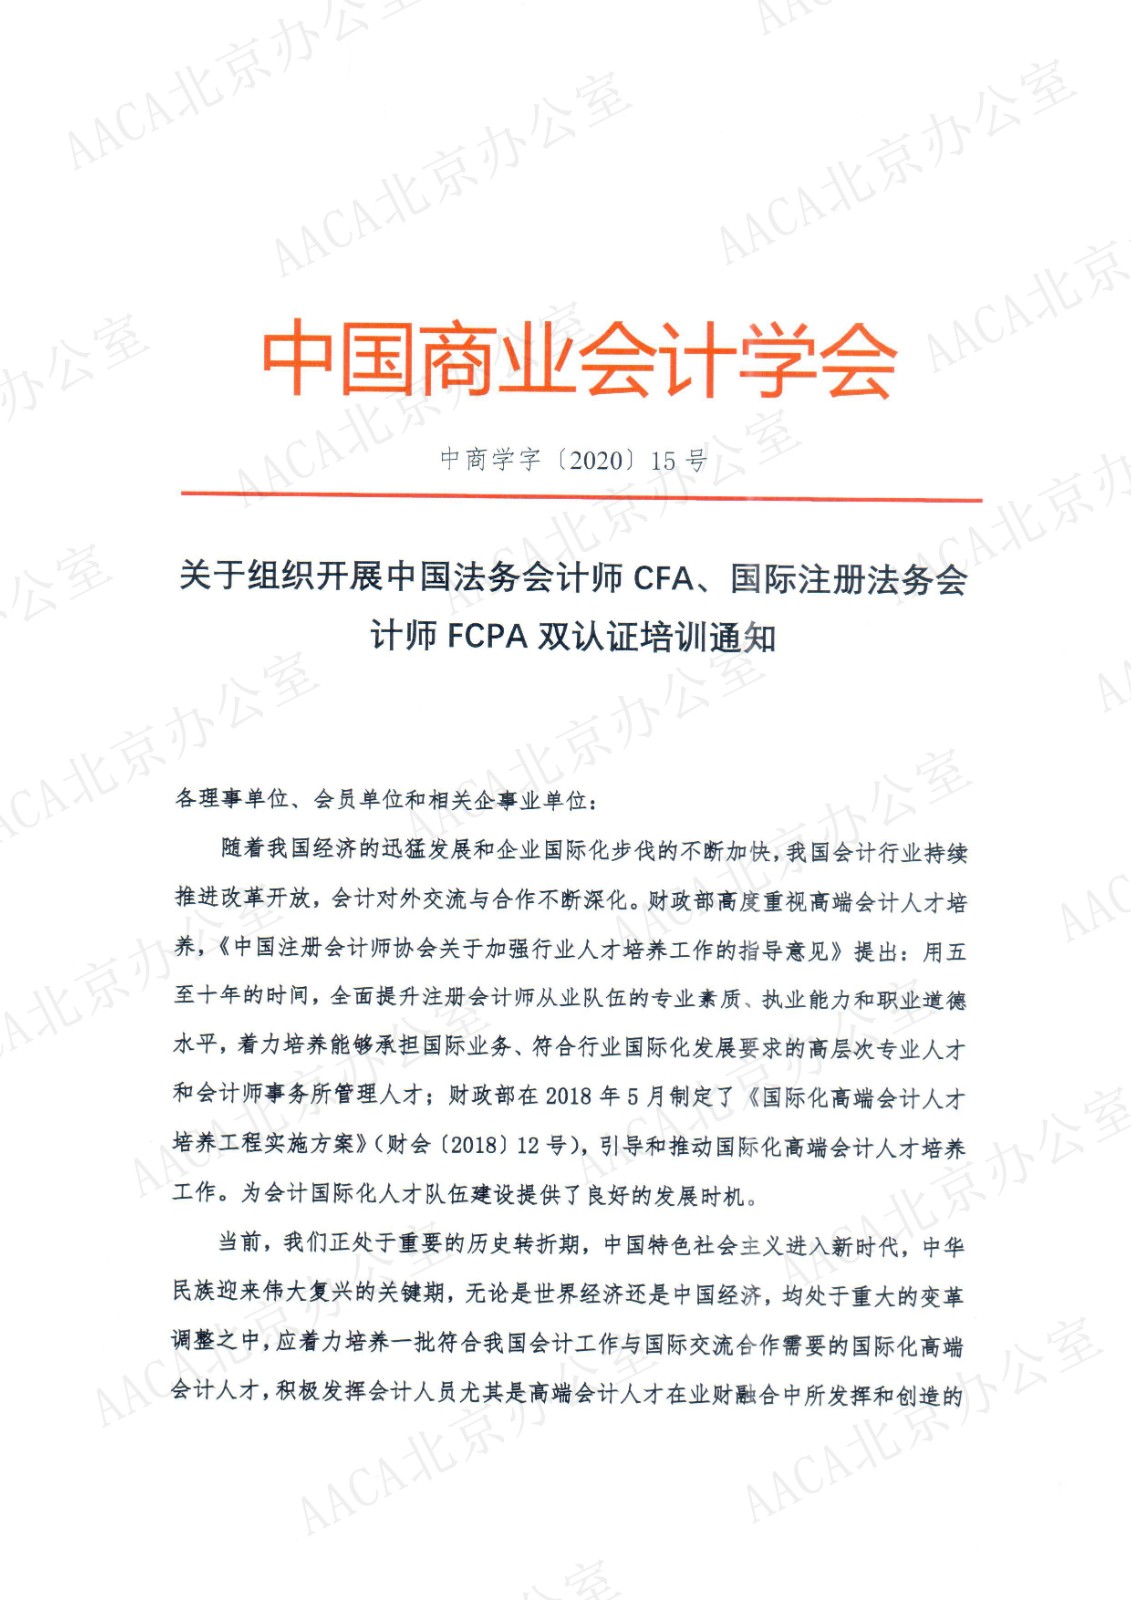 中国商业会计学会关于组织开展中国法务会计师CFA、国际注册法务会计师FCPA认证培训的通知